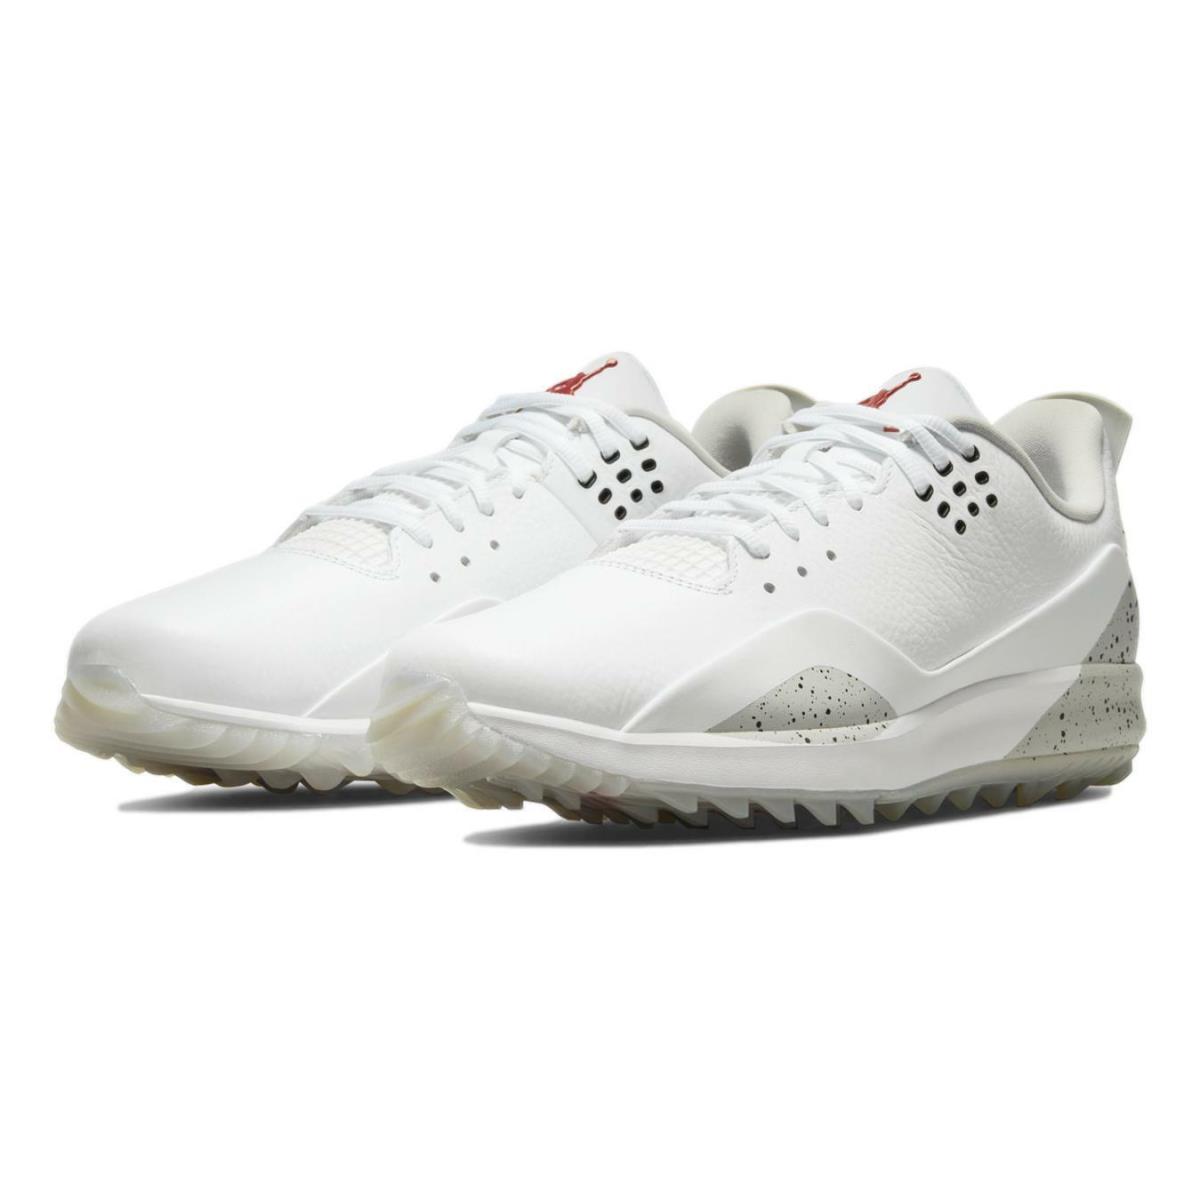 Nike Men`s Air Jordan Adg 3 Golf Shoes White Cement CW7242-100 - White/Fire-Tech Grey-Black